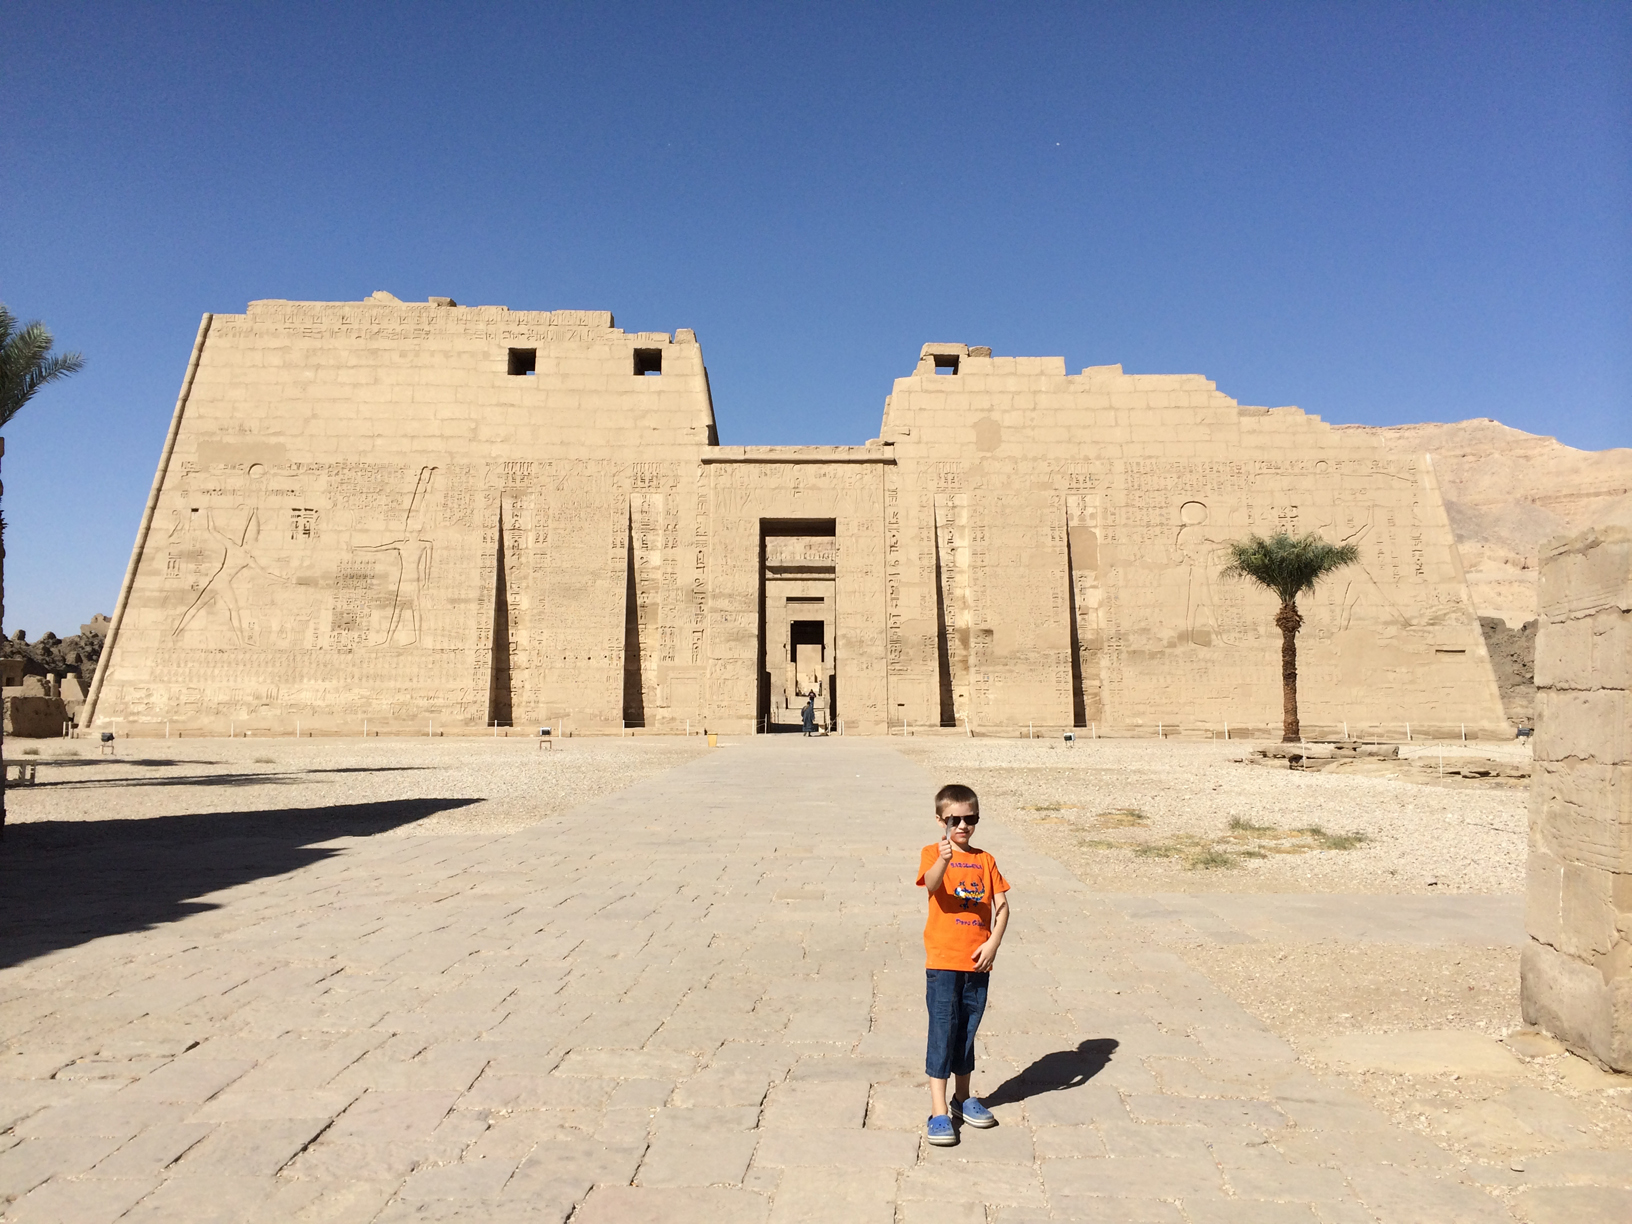 
Tempio di Medinet Habu, Luxor